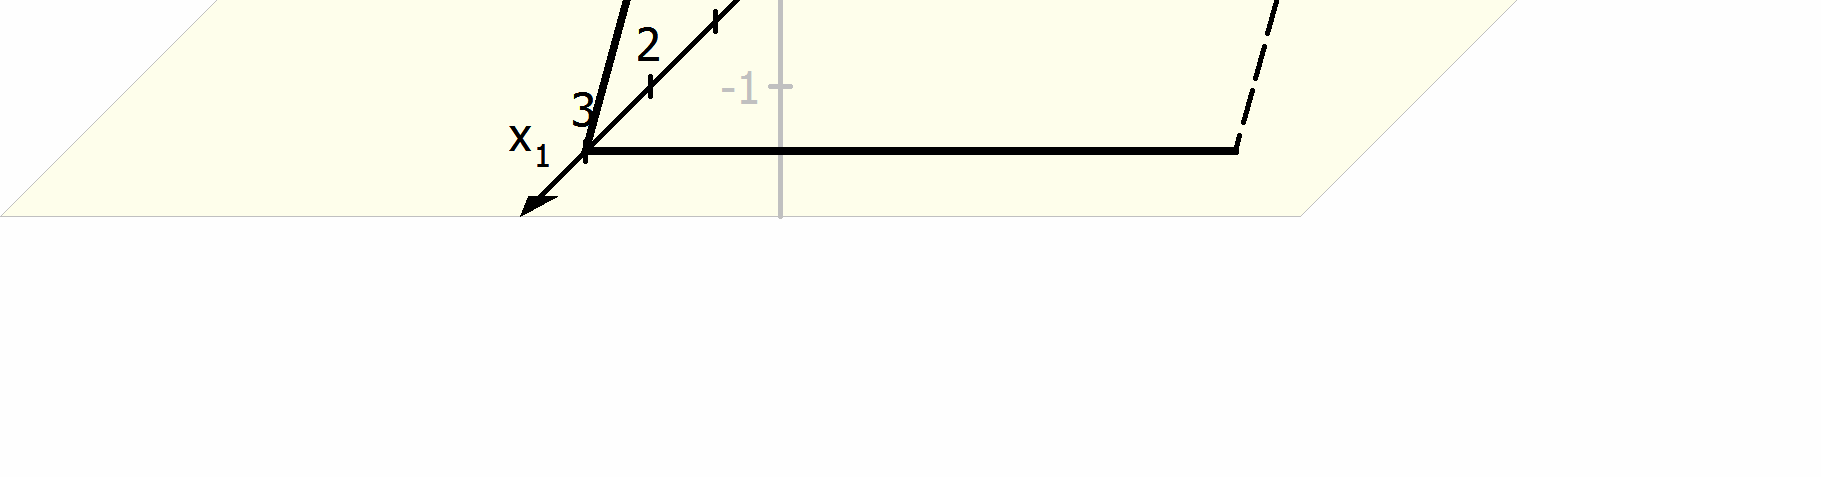 x S (0 / 0 / x ) = S (0 / 0 / 4) x 3 x 3 3 Die Ebene ist folglich parallel zur x -Achse. b) Ein Punkt auf der x3 -Achse hat die Koordinaten P(0 / 0 / a).